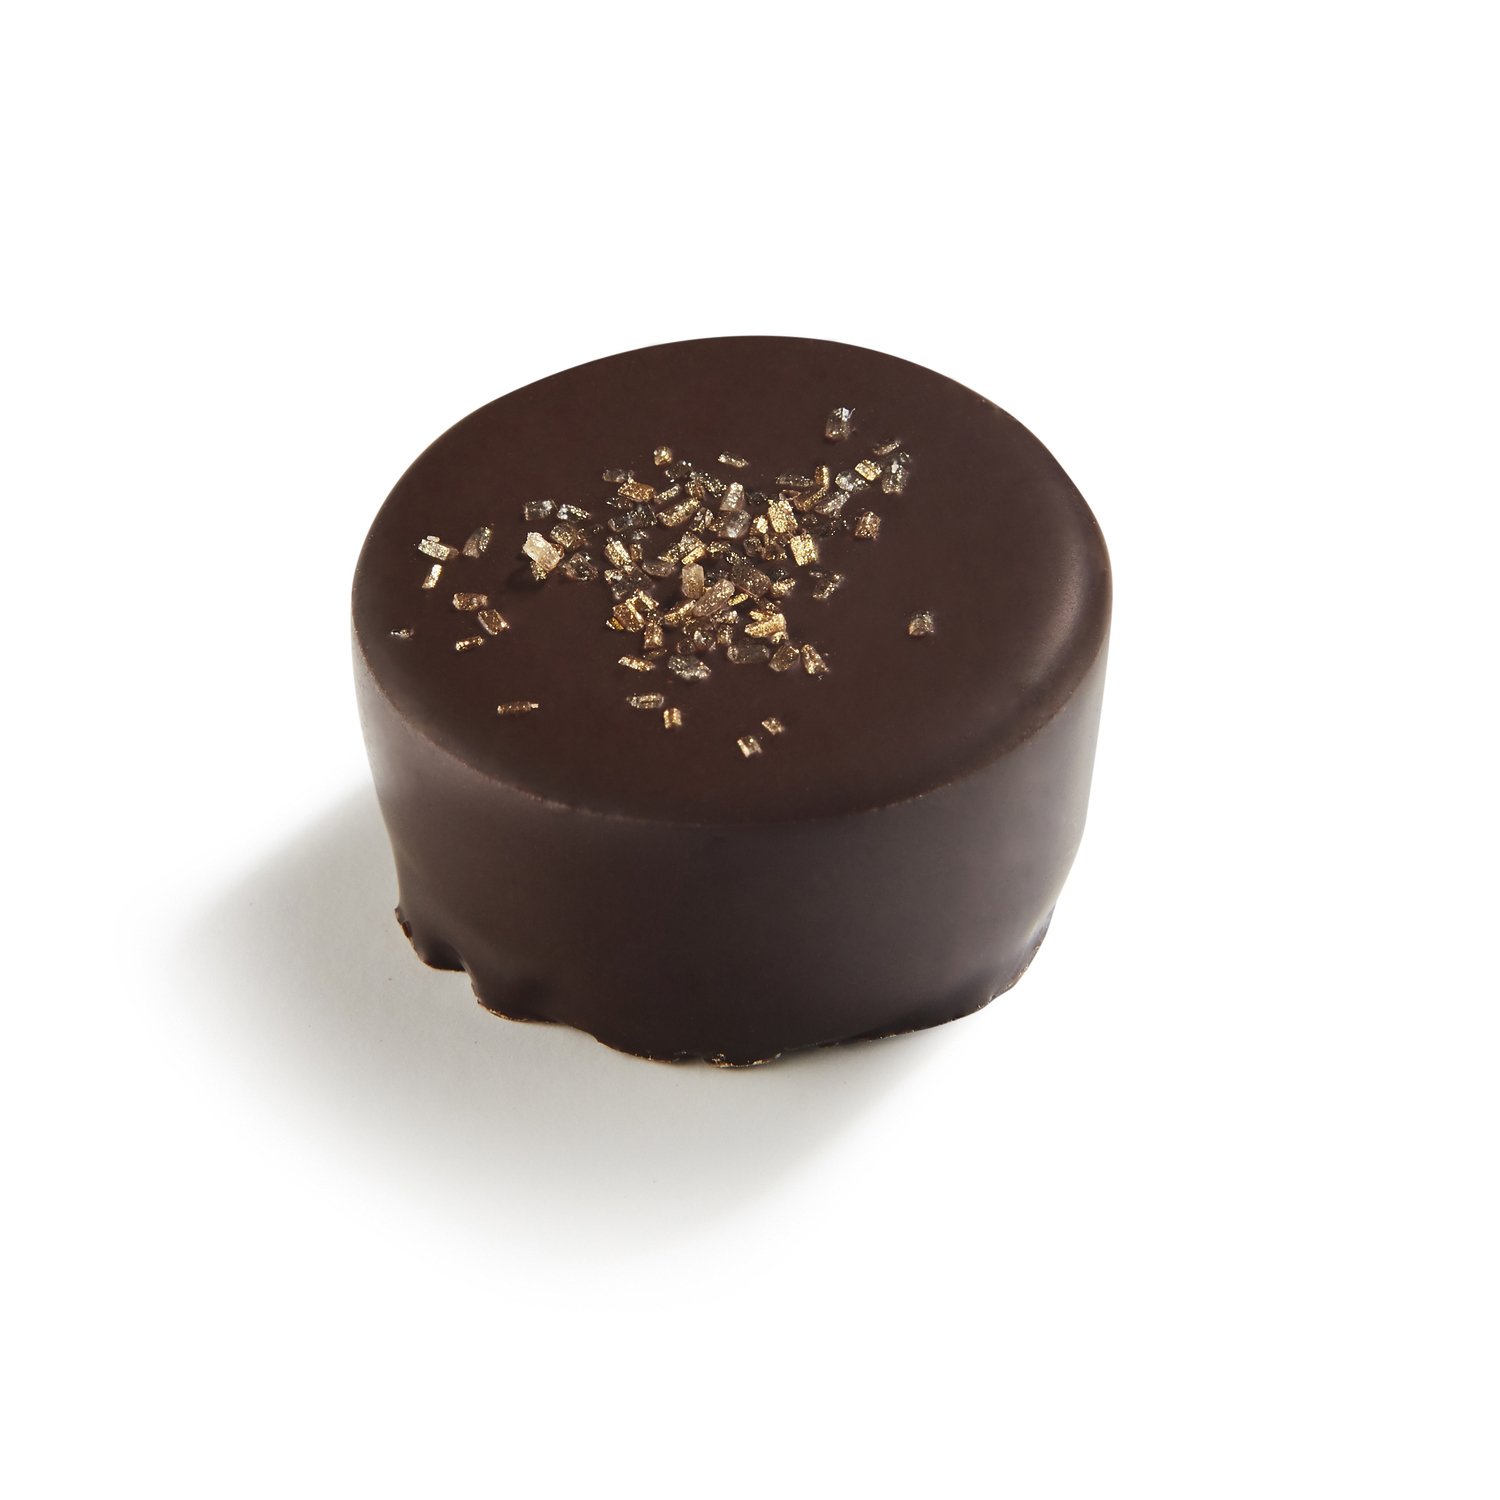 Palet Or - dark chocolate with a dark chocolate ganache 14.9g - 1kg